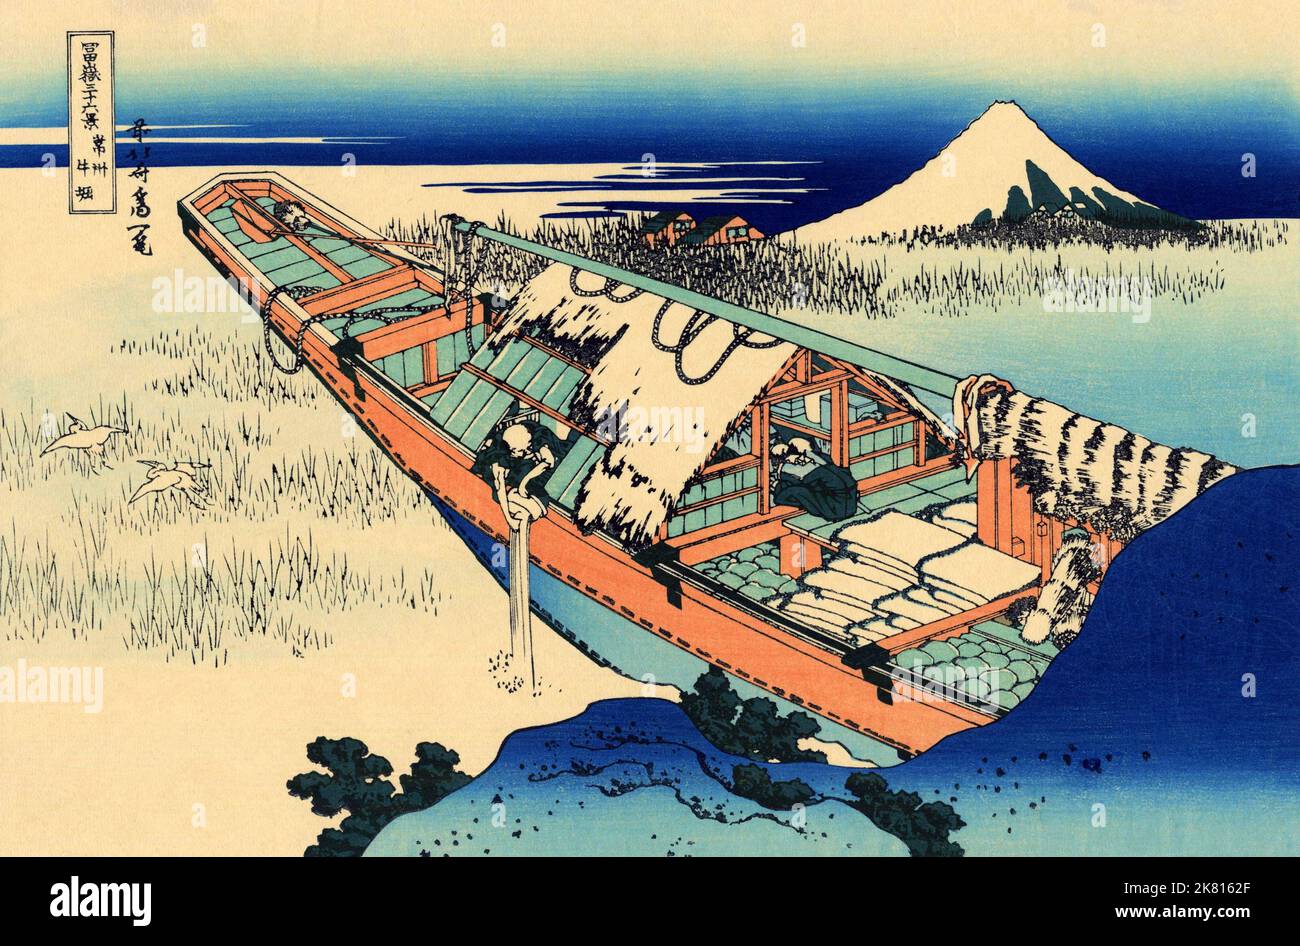 Japan: „Shibori ‘Hitachi Province“. Ukiyo-e Holzschnitt aus der Serie ‘36 Ansichten des Fuji’ von Katsushika Hokusai (31. Oktober 1760 - 10. Mai 1849), c. 1830. ‘36 Views of Mount Fuji’ ist eine ‘„Sukiyo-e“-Serie großer Holzschnitte der Künstlerin Katsushika Hokusai. Die Serie zeigt den Fuji in unterschiedlichen Jahreszeiten und Wetterbedingungen an verschiedenen Orten und Entfernungen. Es besteht tatsächlich aus 46 Drucken, die zwischen 1826 und 1833 entstanden sind. Die ersten 36 wurden in die Originalpublikation aufgenommen, und aufgrund ihrer Popularität wurden nach der Originalpublikation 10 weitere hinzugefügt. Stockfoto